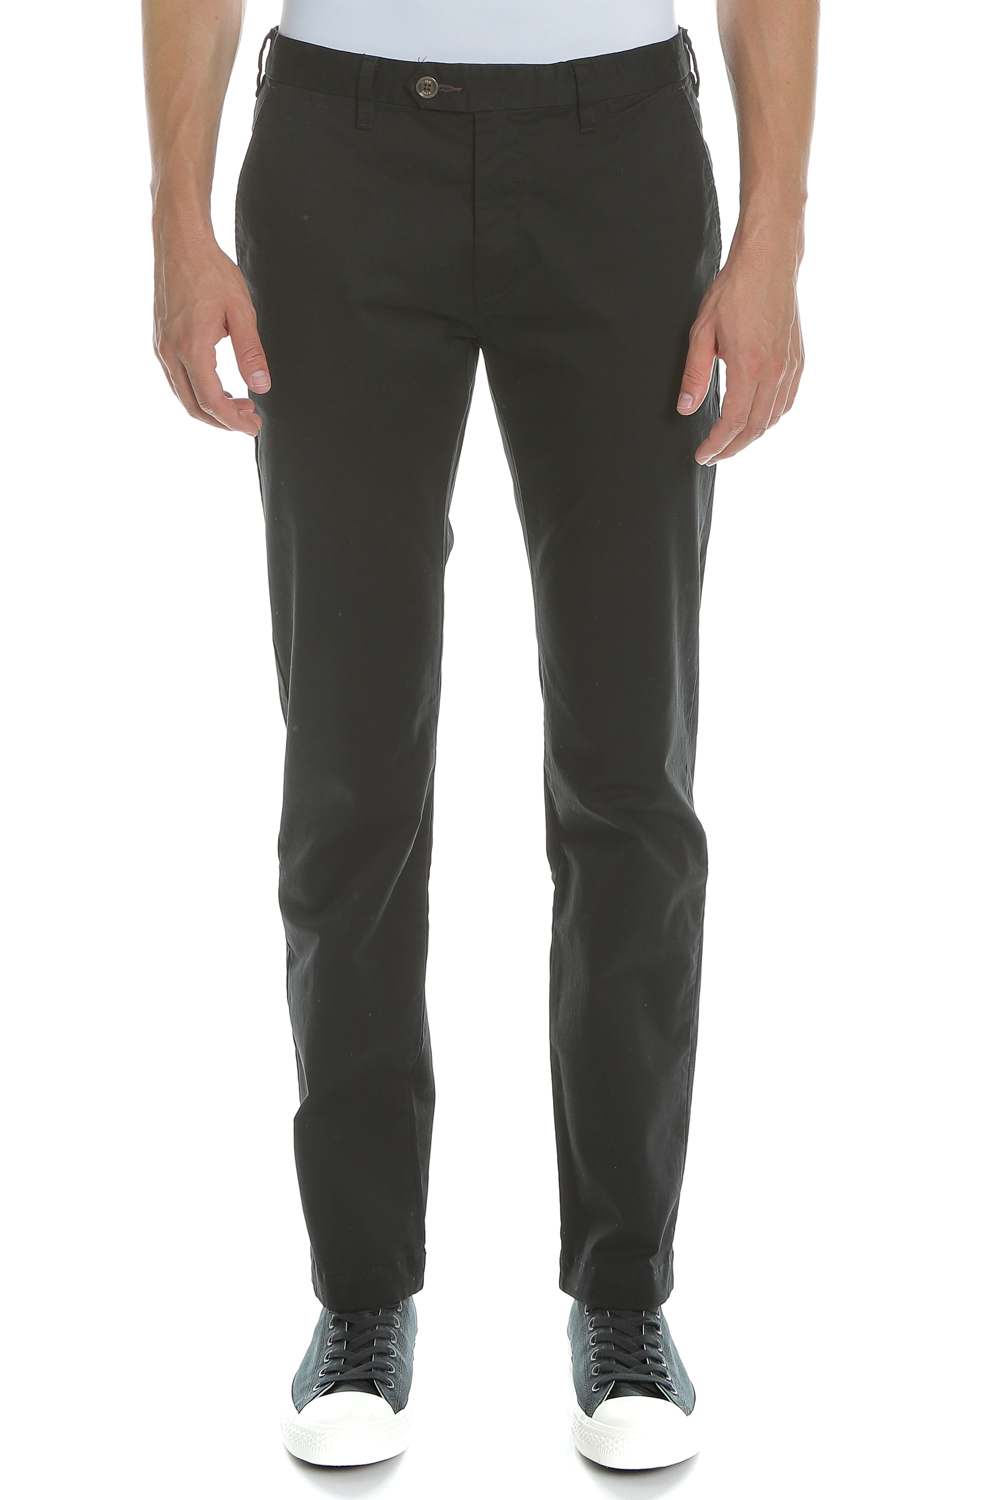 Ανδρικά/Ρούχα/Παντελόνια/Chinos TED BAKER - Ανδρικό chino παντελόνι SELEB μαύρο